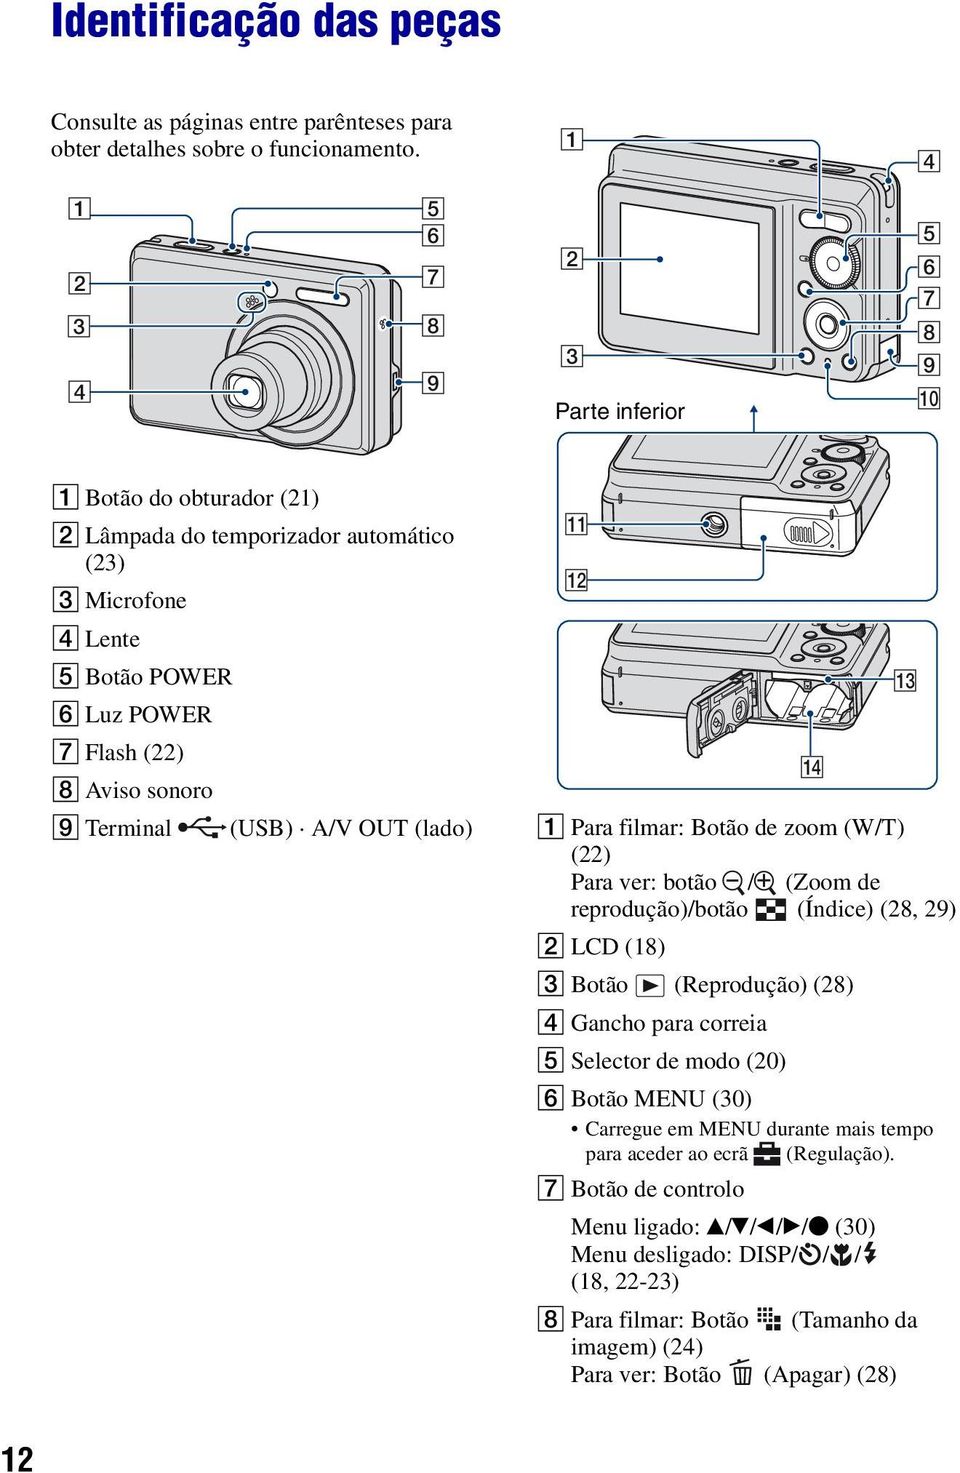 Aviso sonoro I Terminal (USB) A/V OUT (lado) A Para filmar: Botão de zoom (W/T) (22) Para ver: botão / (Zoom de reprodução)/botão (Índice) (28, 29) B LCD (18) C Botão (Reprodução) (28) D Gancho